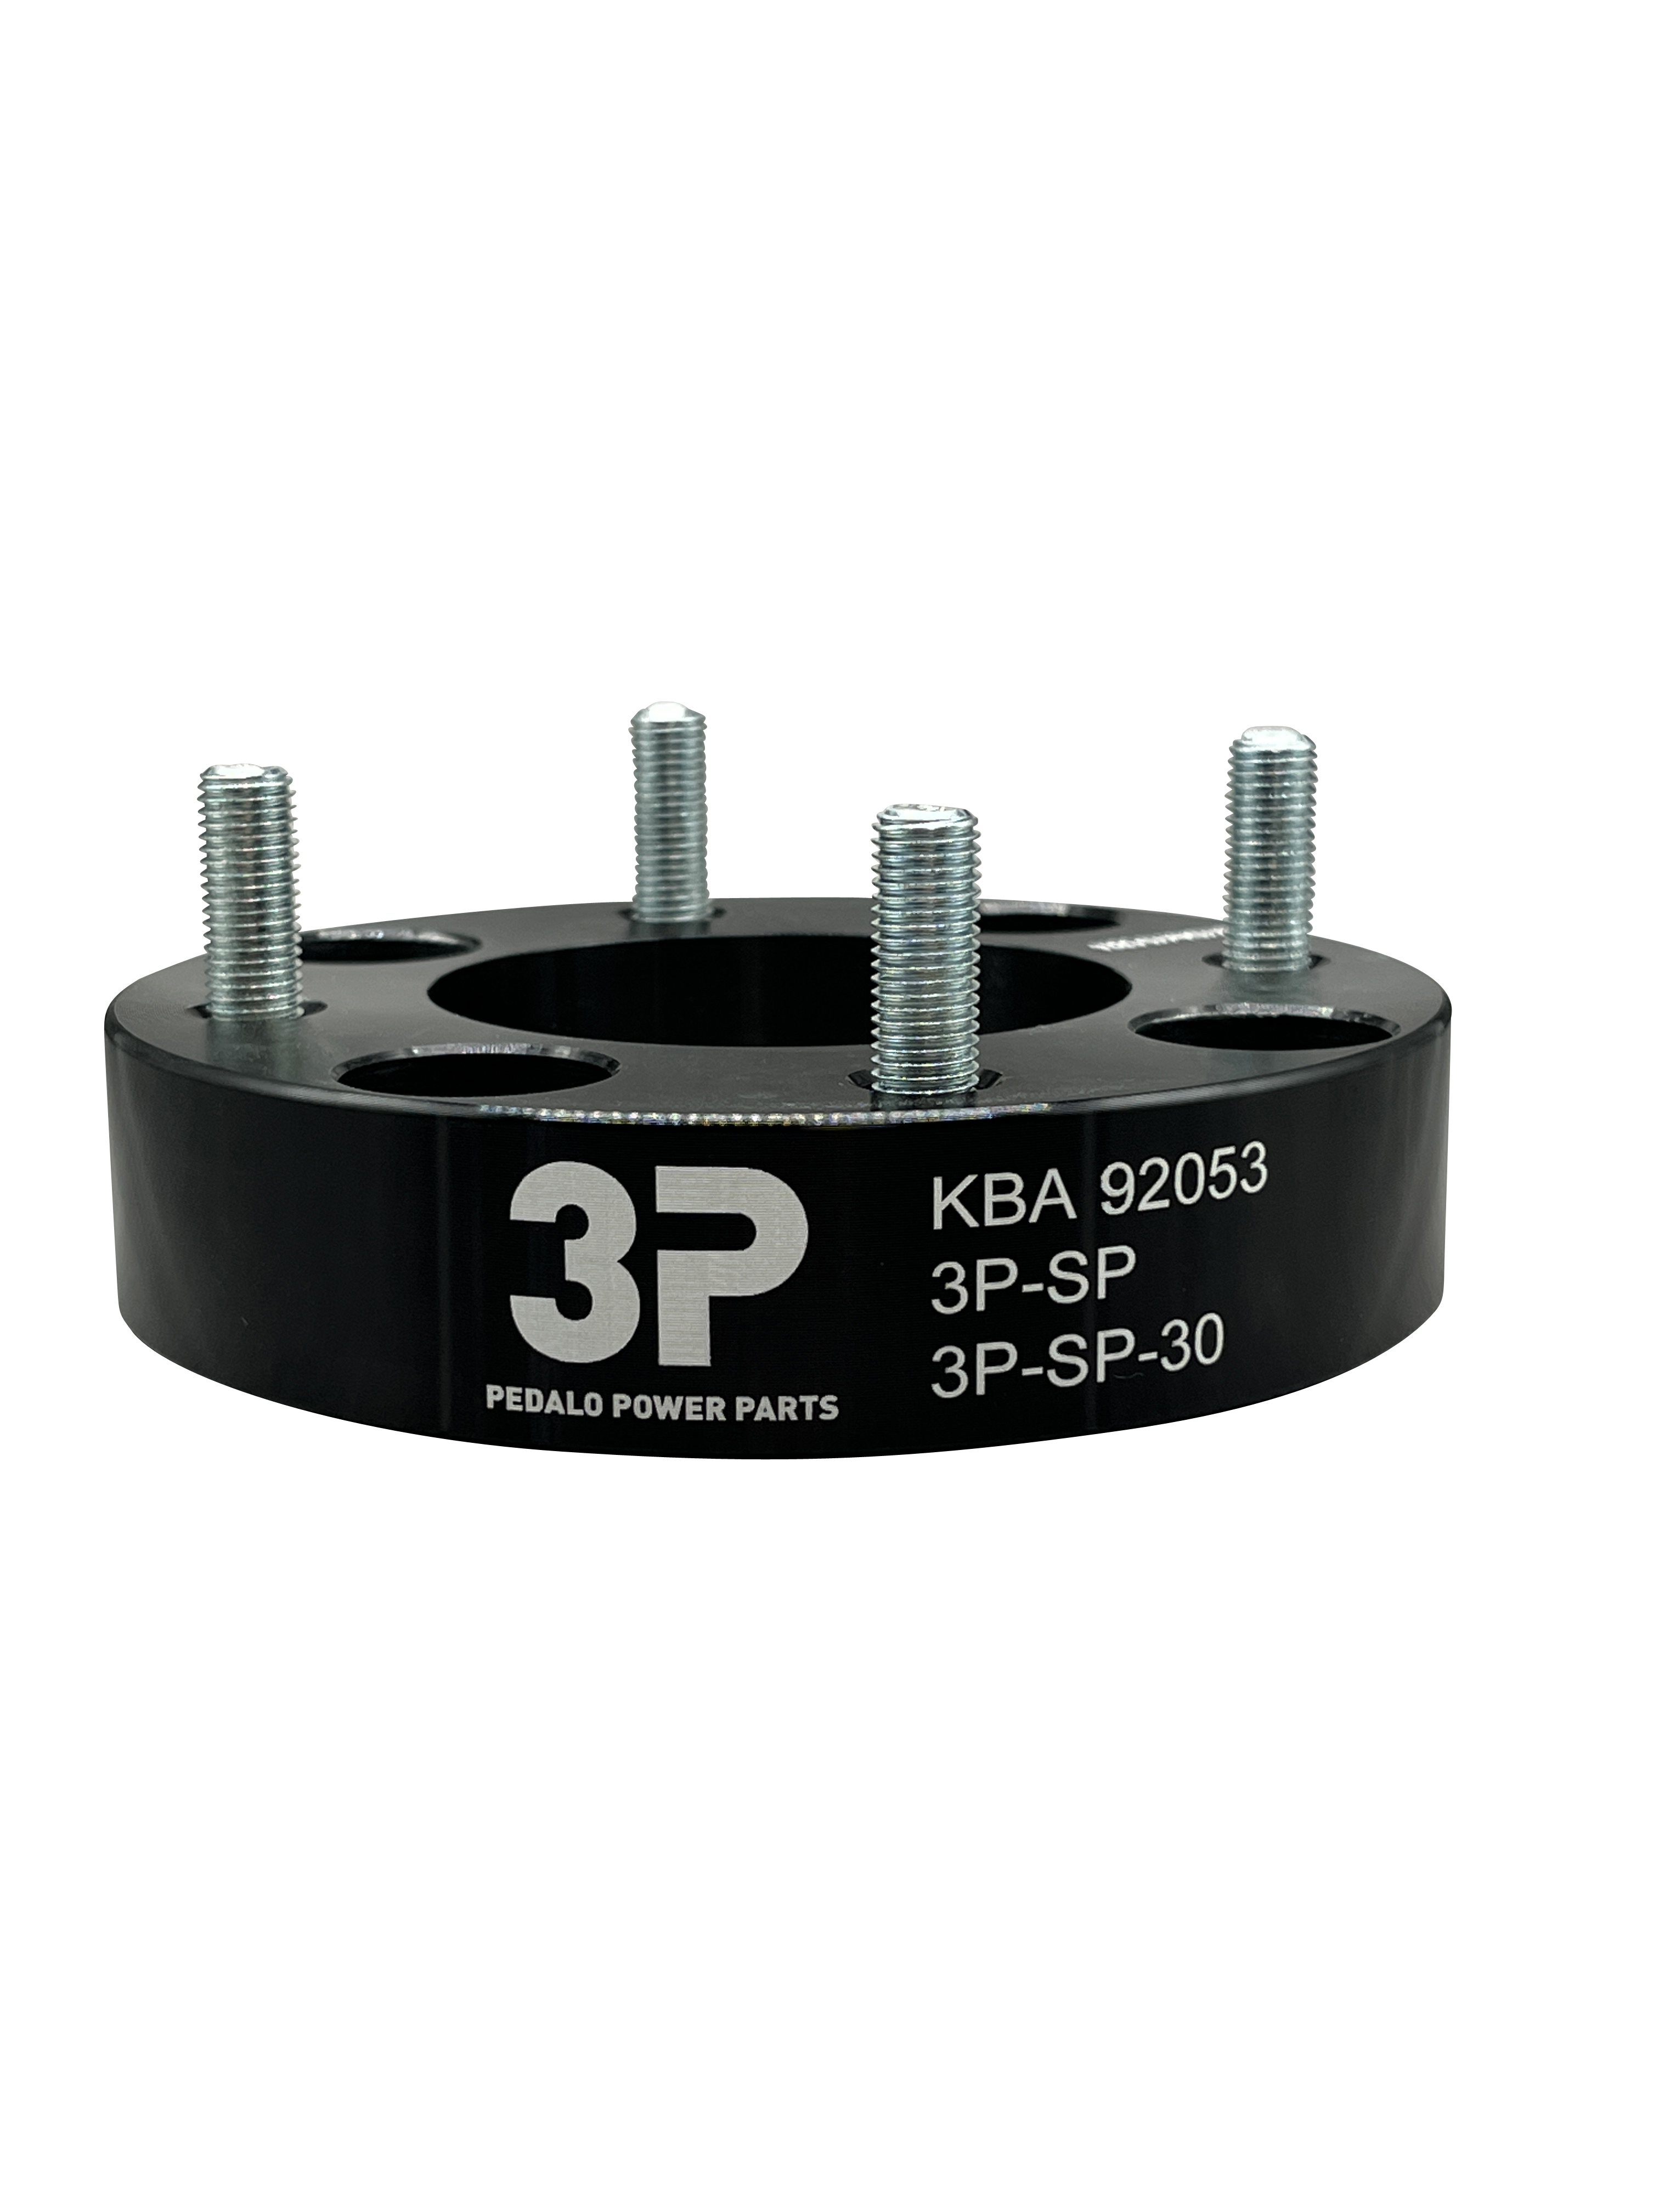 3P Spurverbreiterungen mit ABE   KYMCO  Hintersachse 50 mm  